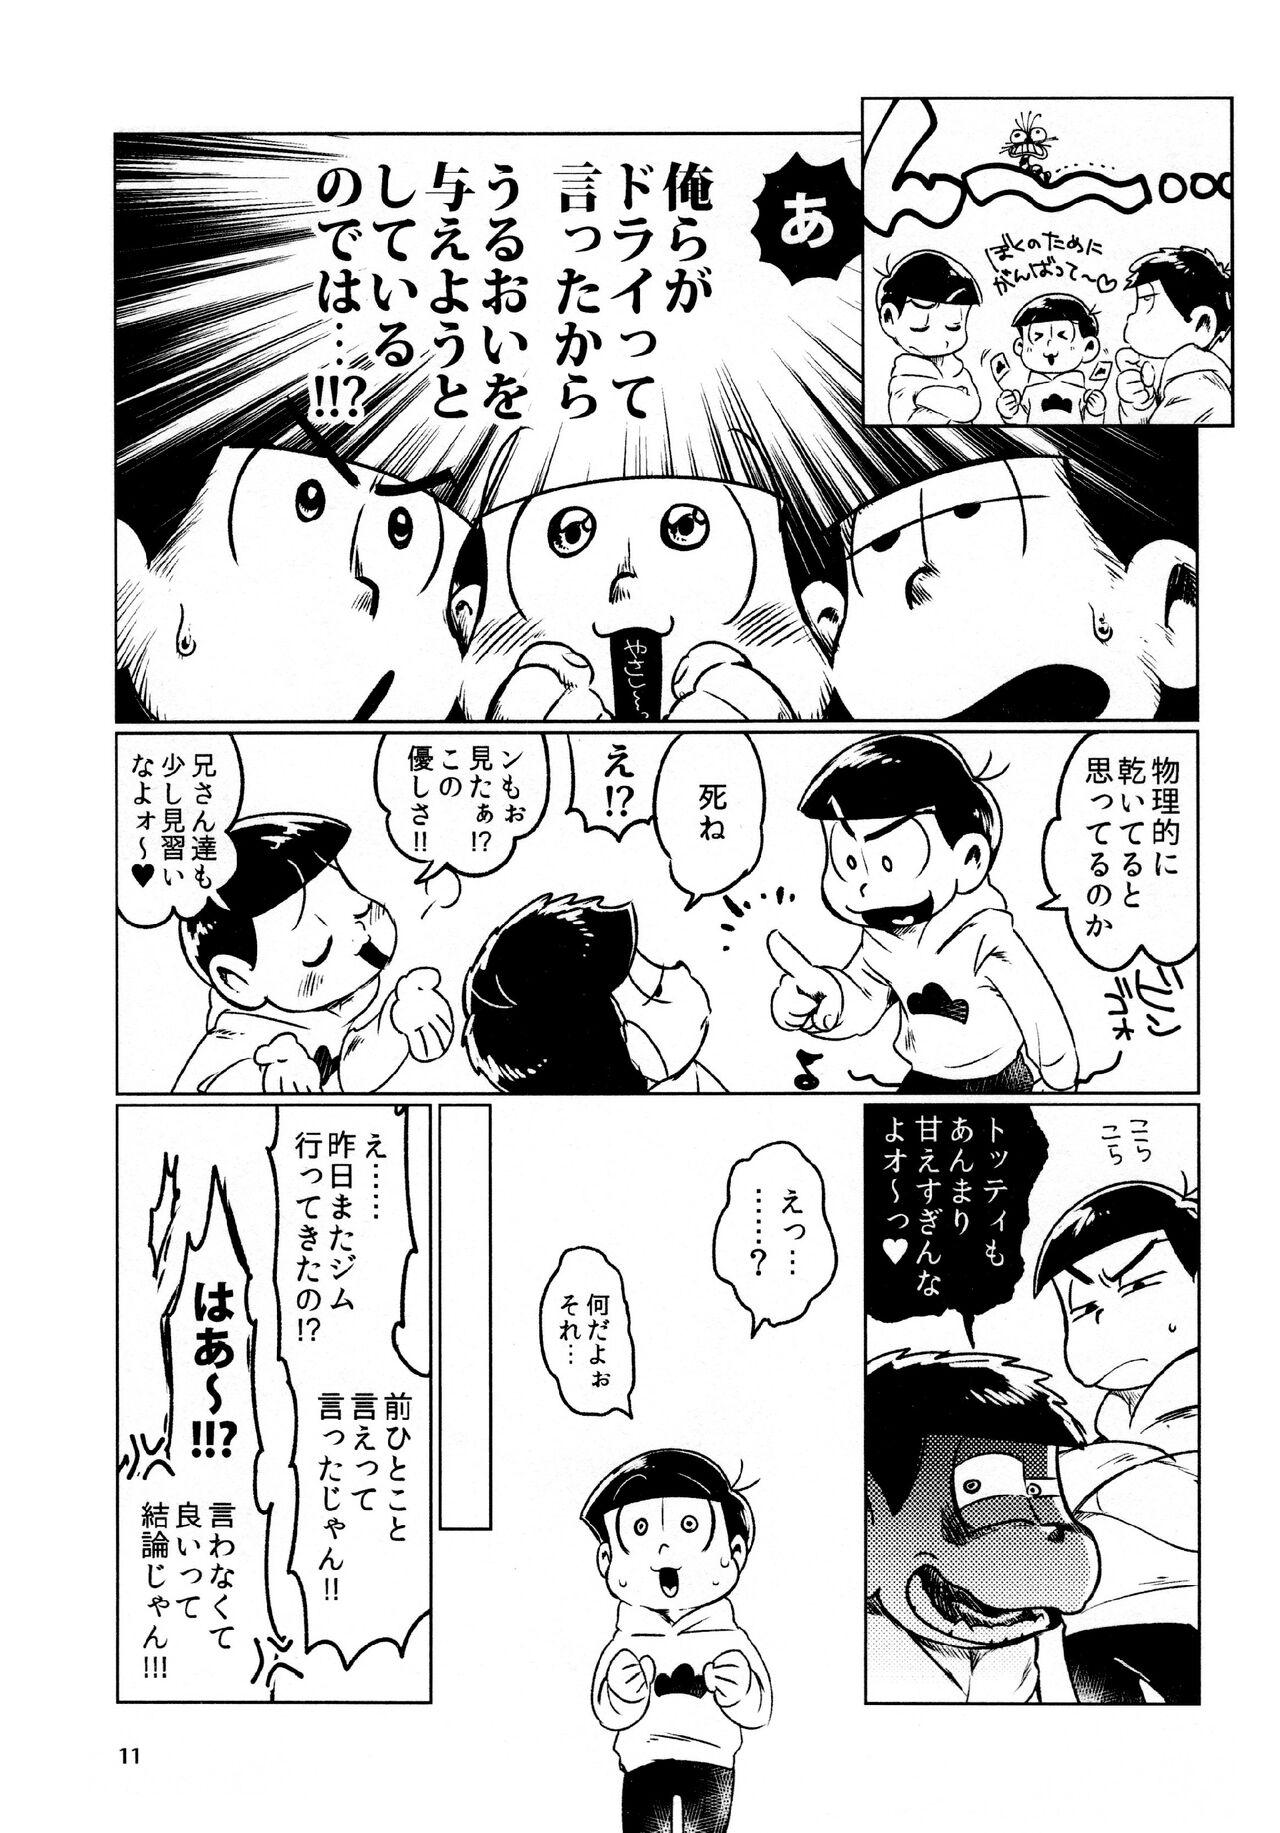 Sola todomatsu bishi yonurekeikaku - Osomatsu-san Hidden - Page 11